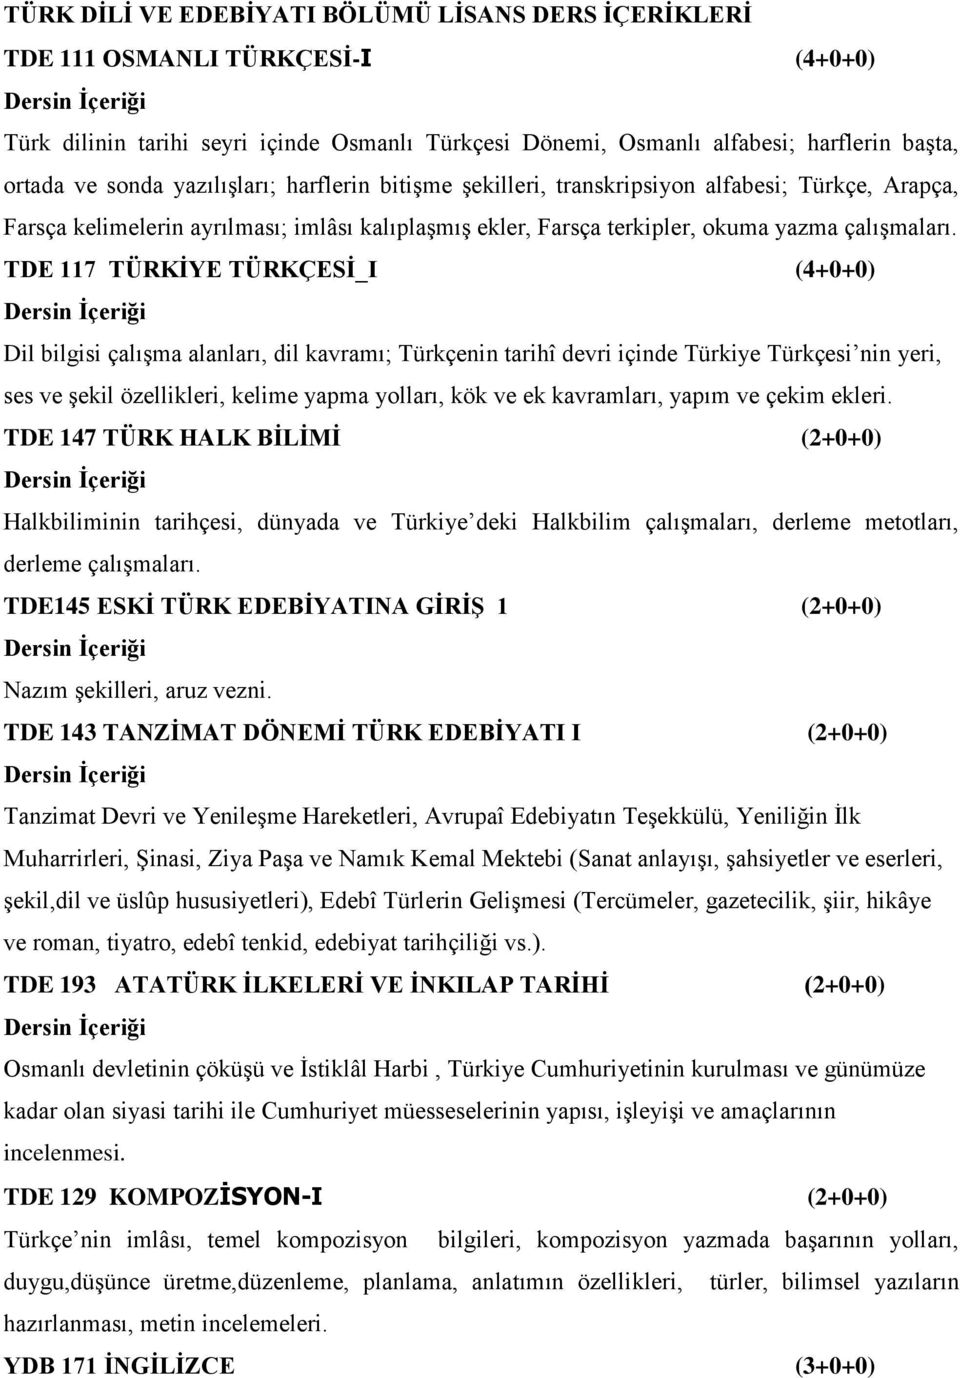 TDE 117 TÜRKĠYE TÜRKÇESĠ_I (4+0+0) Dil bilgisi çalışma alanları, dil kavramı; Türkçenin tarihî devri içinde Türkiye Türkçesi nin yeri, ses ve şekil özellikleri, kelime yapma yolları, kök ve ek